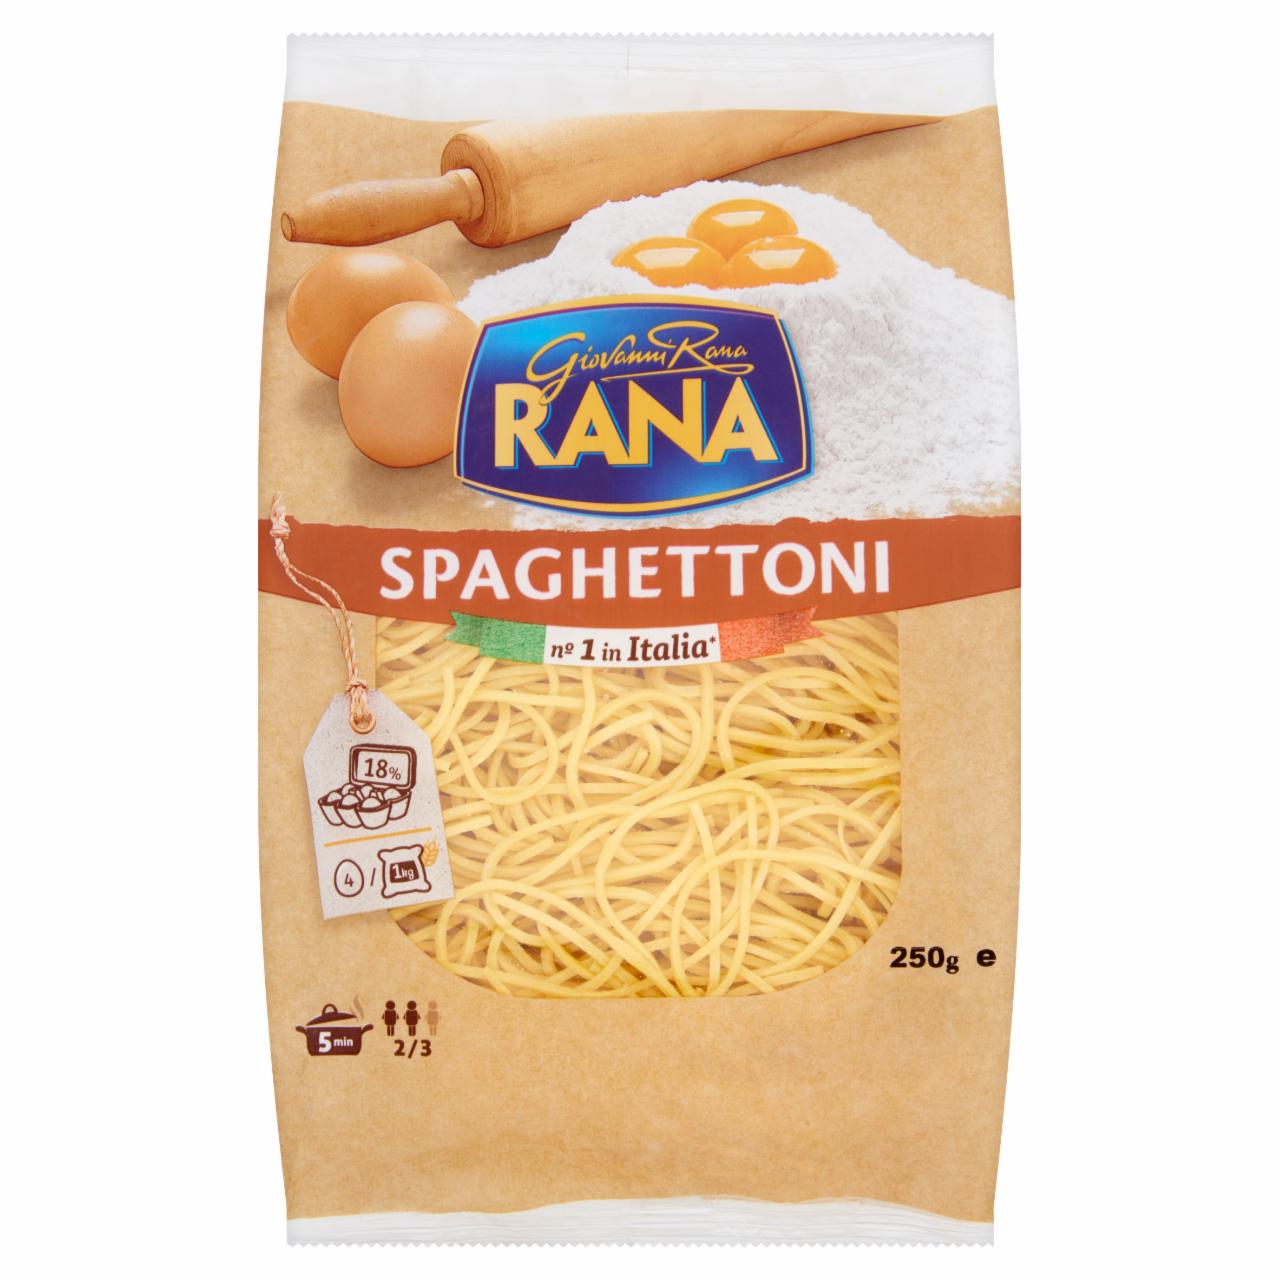 Képek - Giovanni Rana Spaghettioni friss tojással készült tészta 250 g